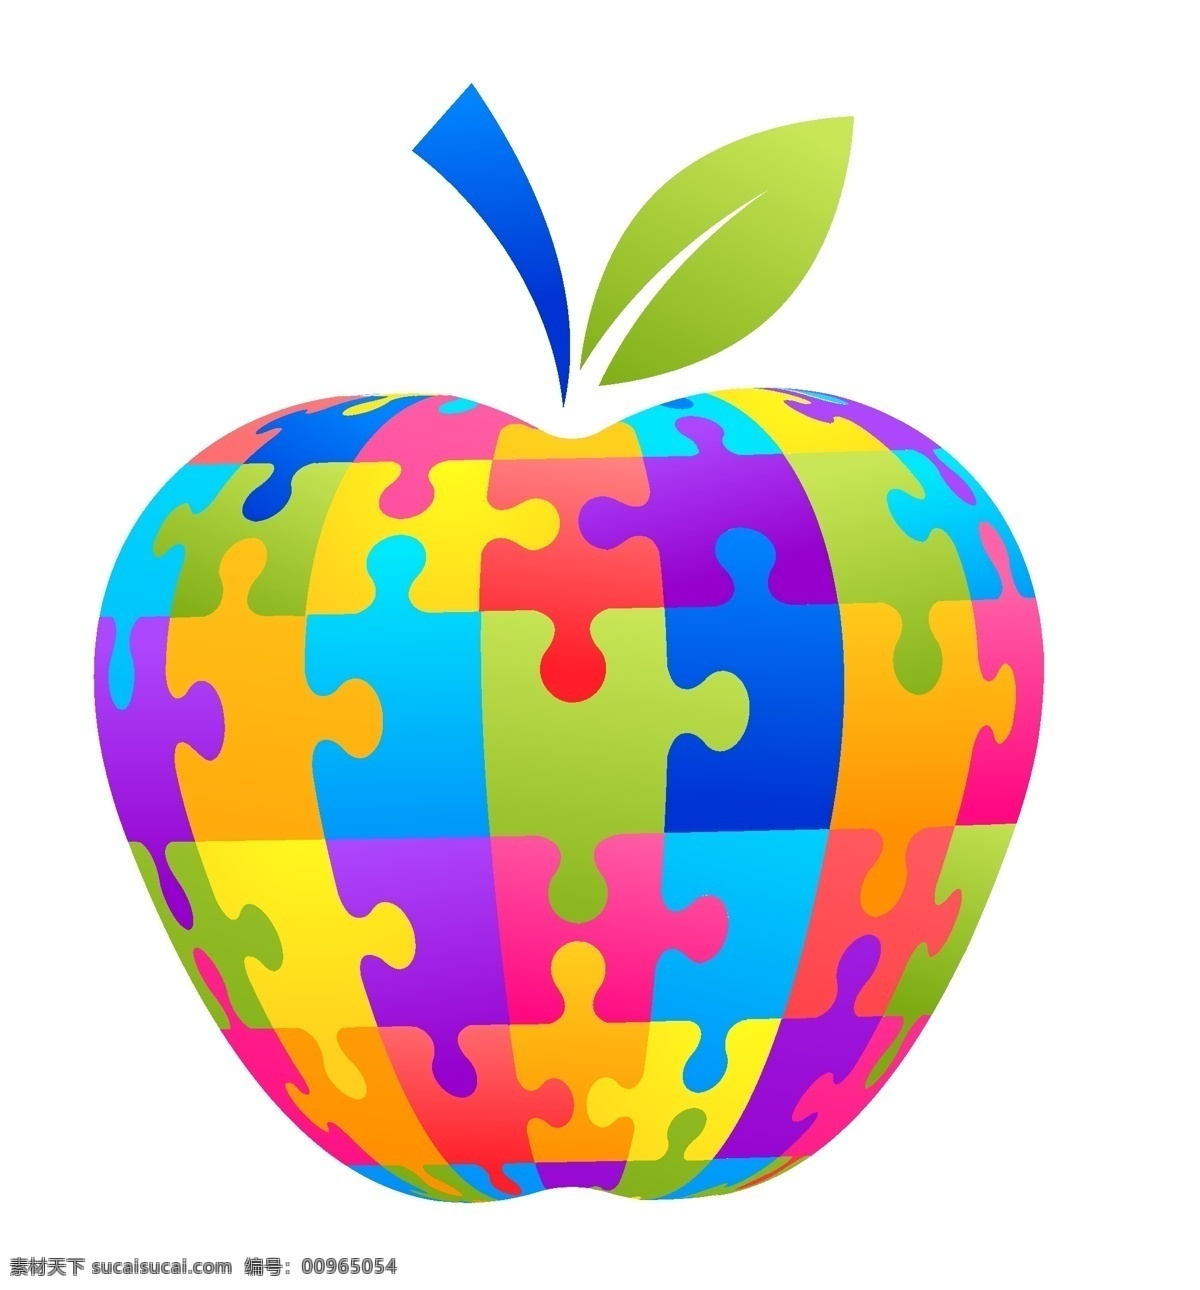 插图 拼图 苹果 苹果拼图 拼图的插图 游戏 插画 矢量 苹果绿 苹果树的例子 说明 抽象 丰富多彩 矢量图 其他矢量图